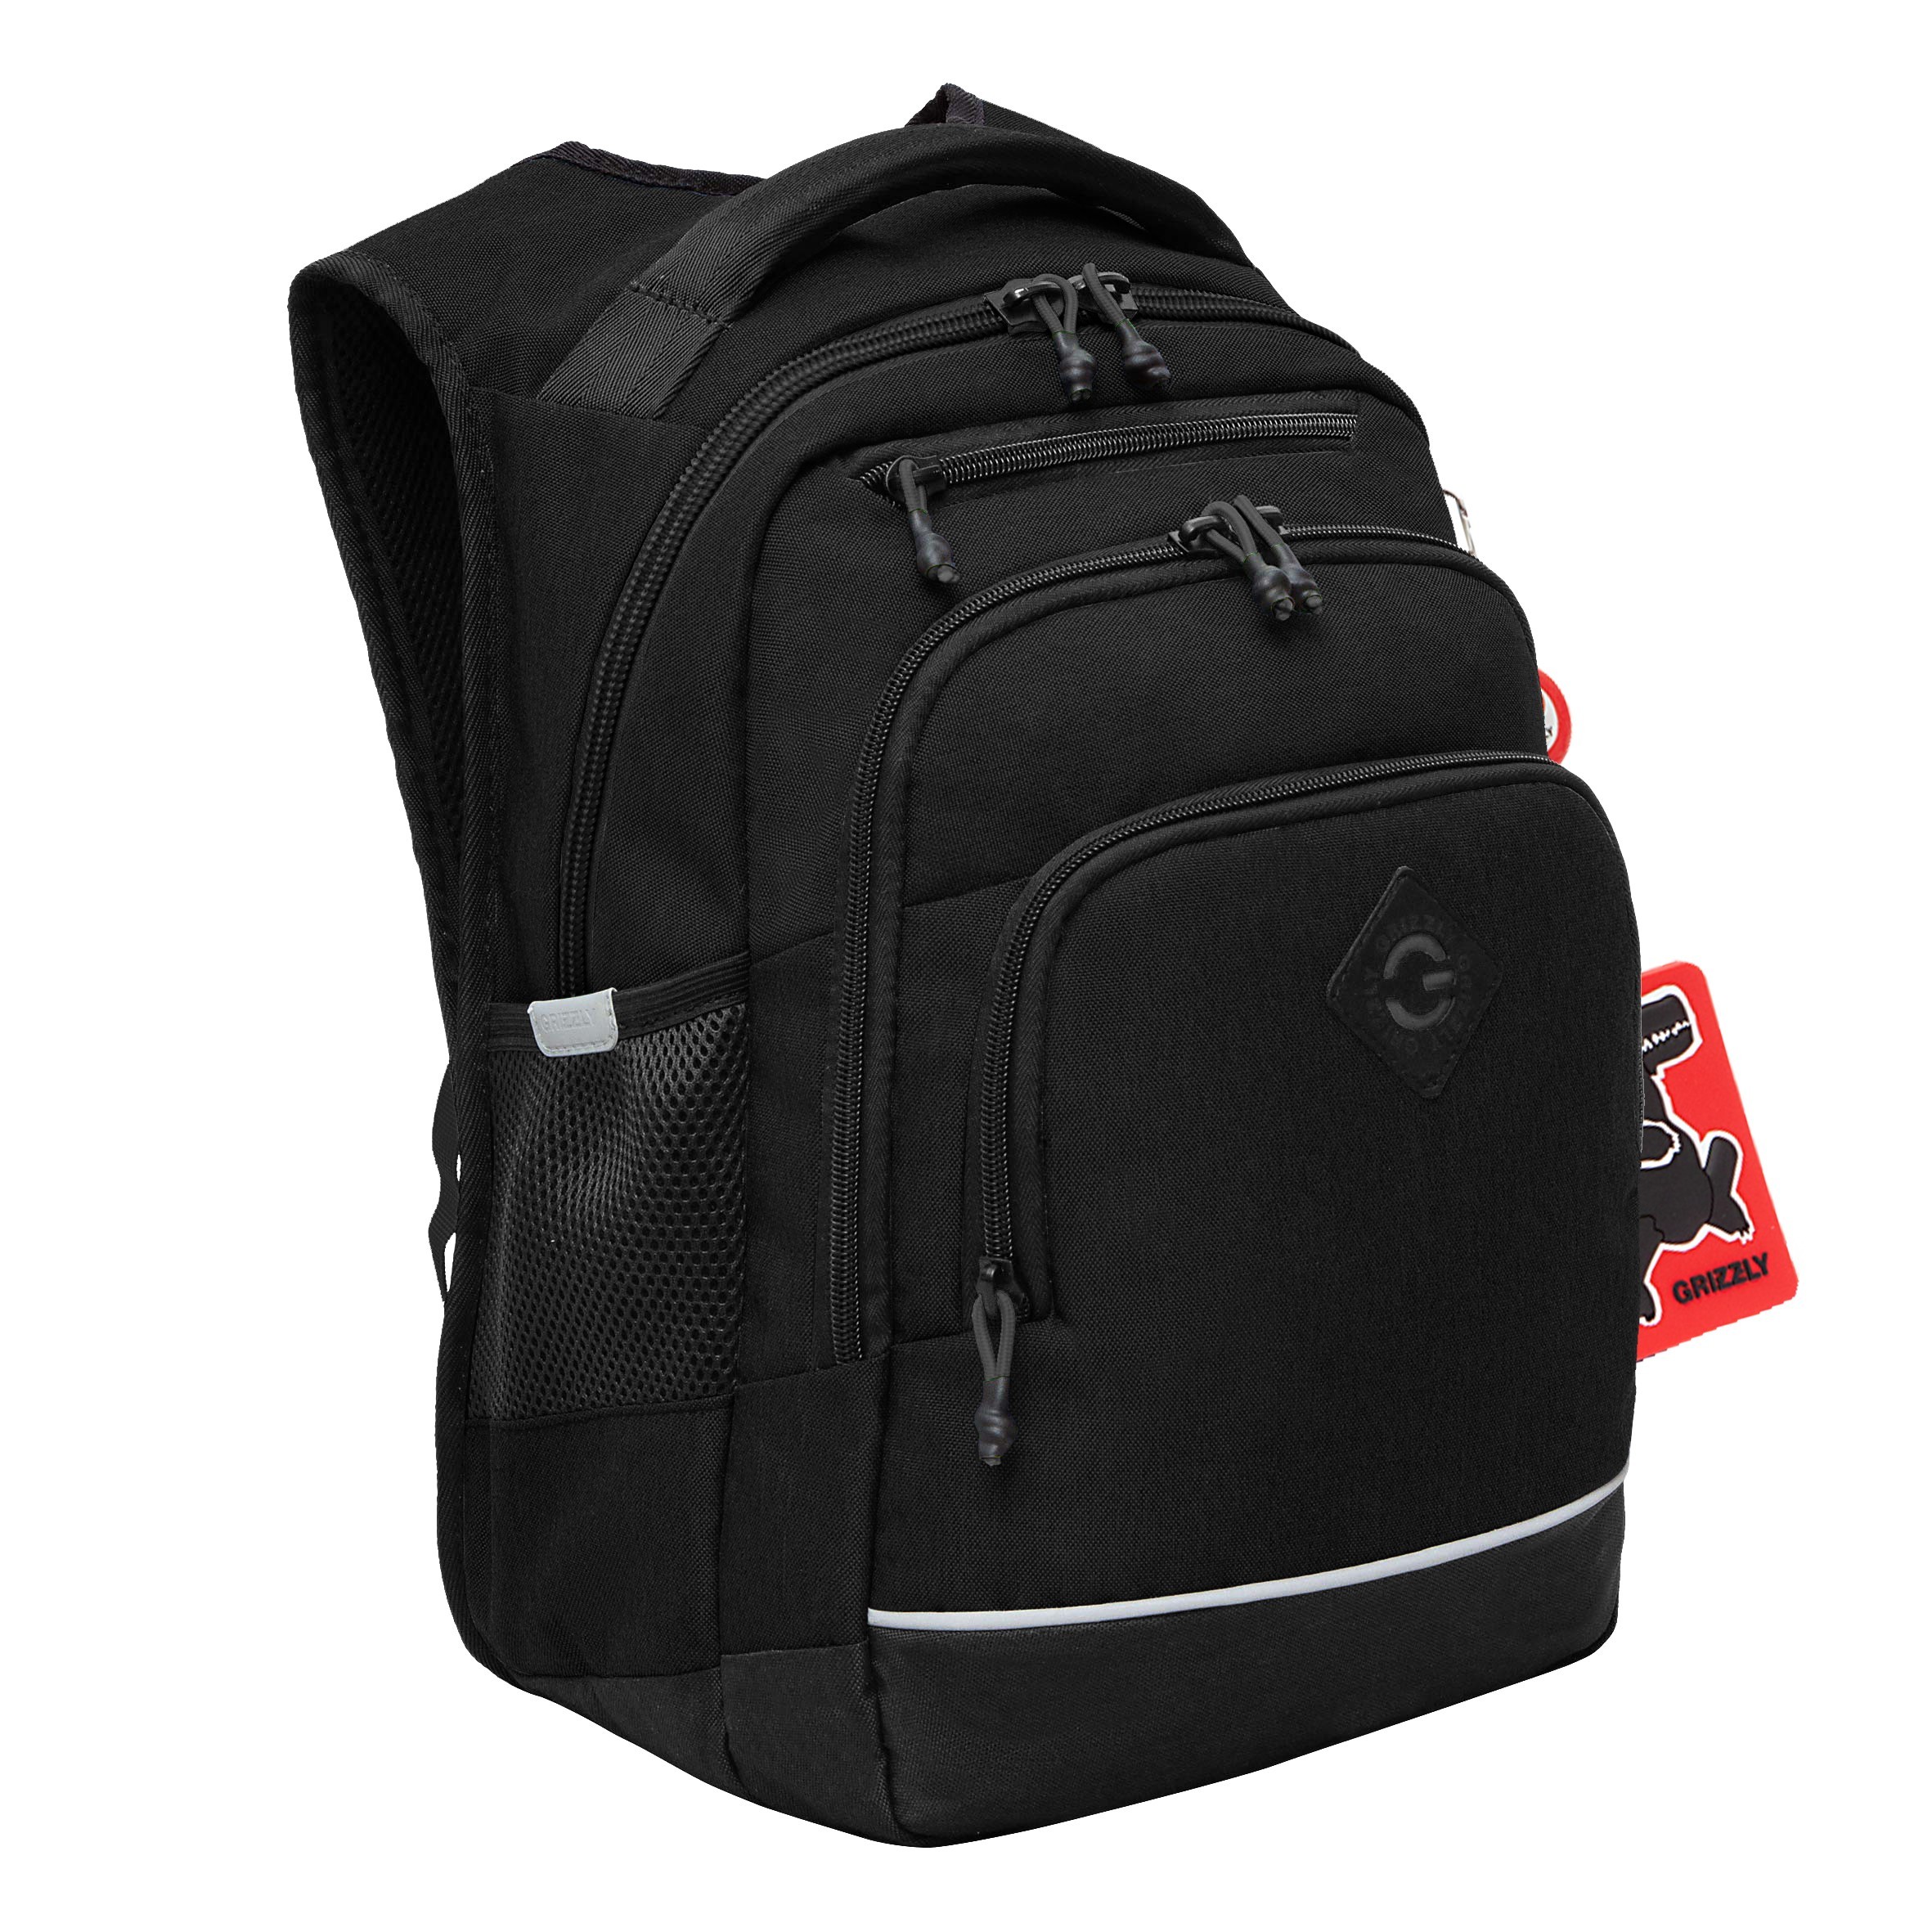 Рюкзак школьный GRIZZLY с карманом для ноутбука 13, анатомический, для мальчика RB-450-1/4 рюкзак молодежный grizzly rd 440 4 1 с карманом для ноутбука 13 золото